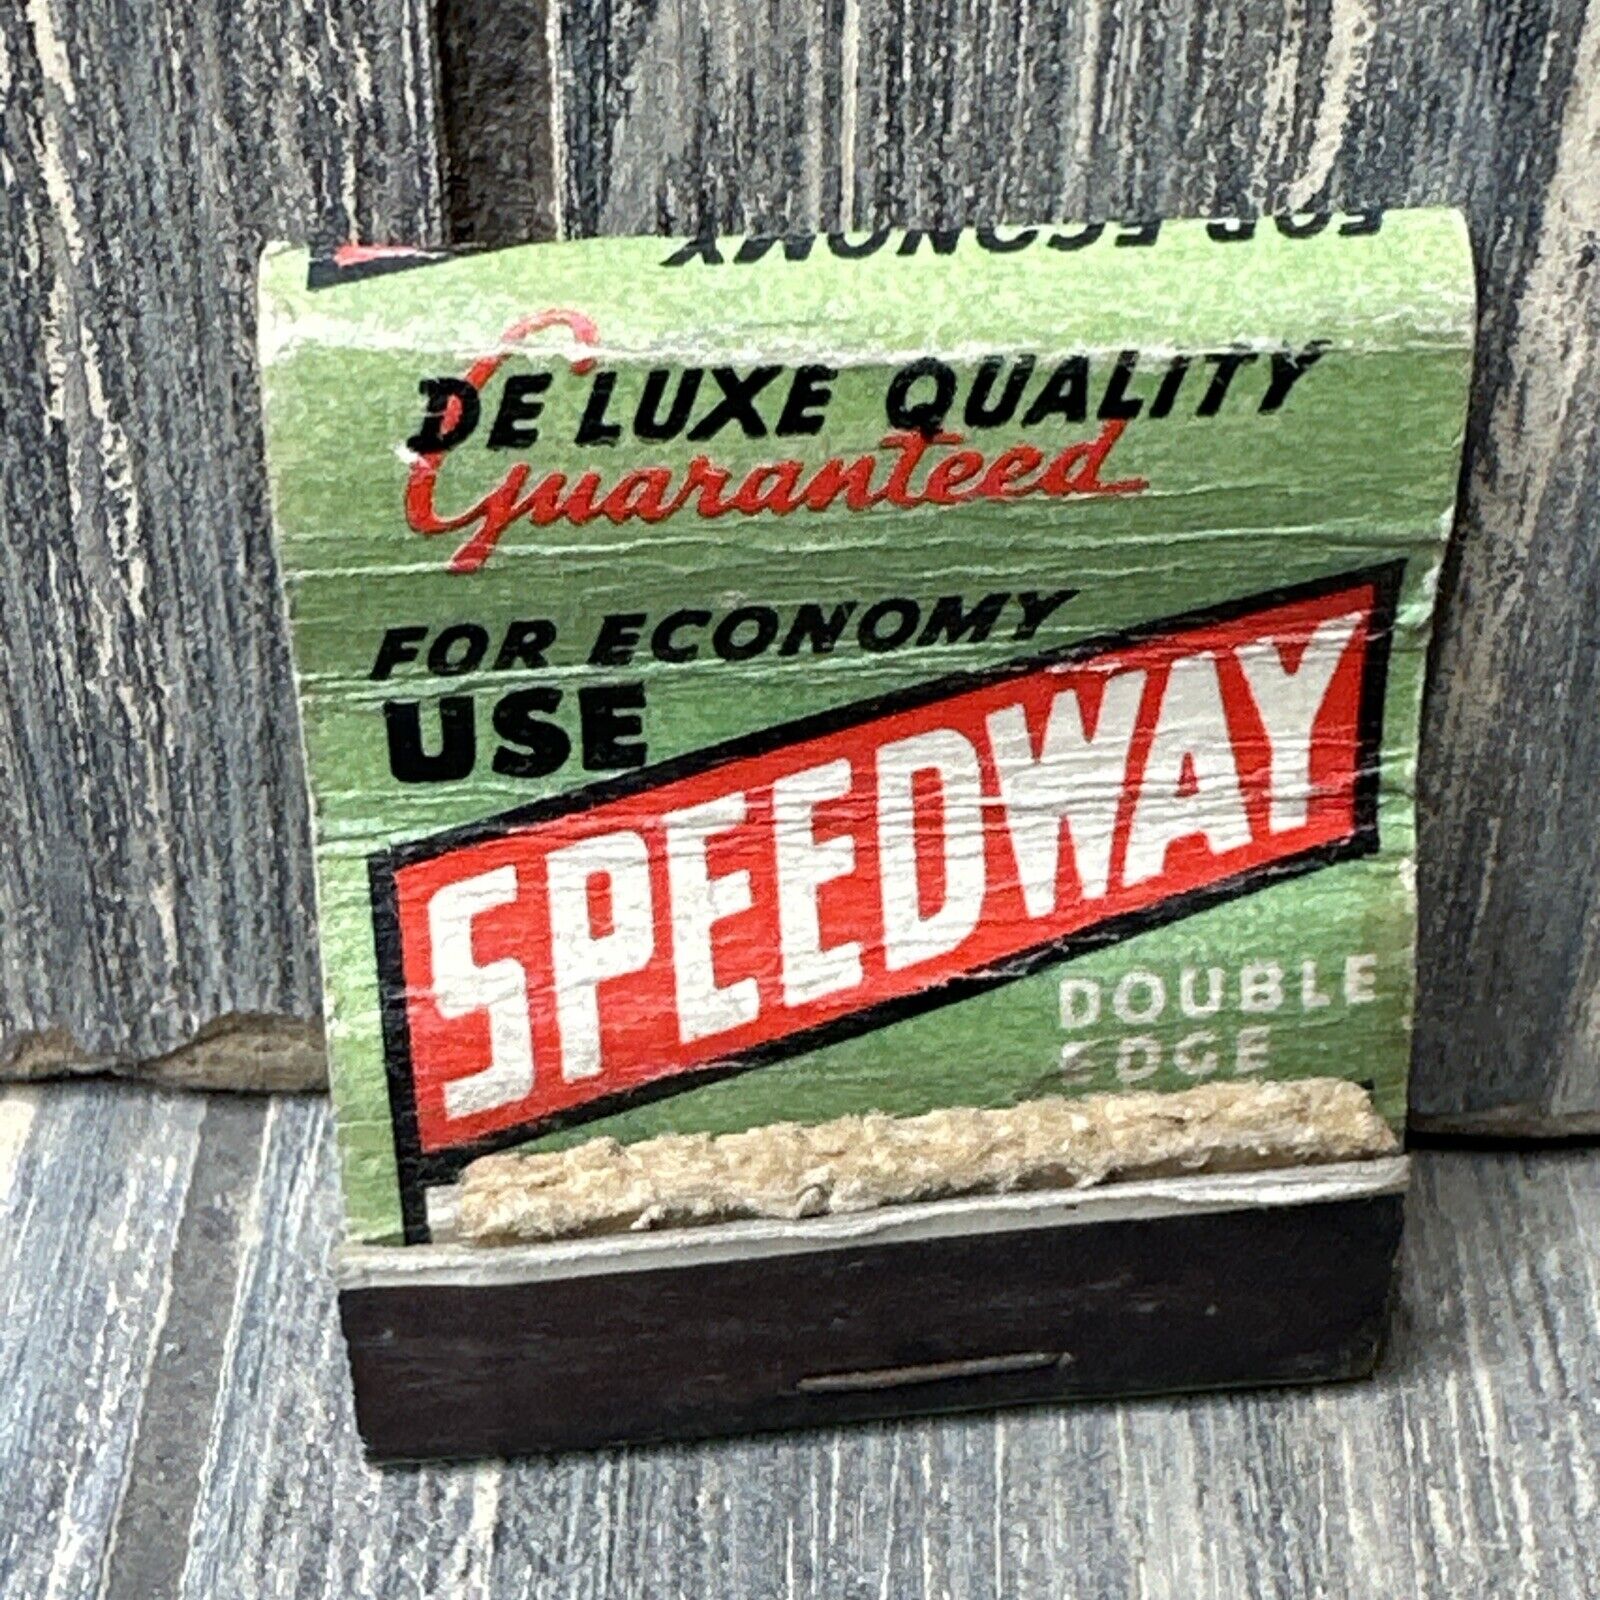 Vintage Speedway Single Edge Blades Matchbook Advertisement